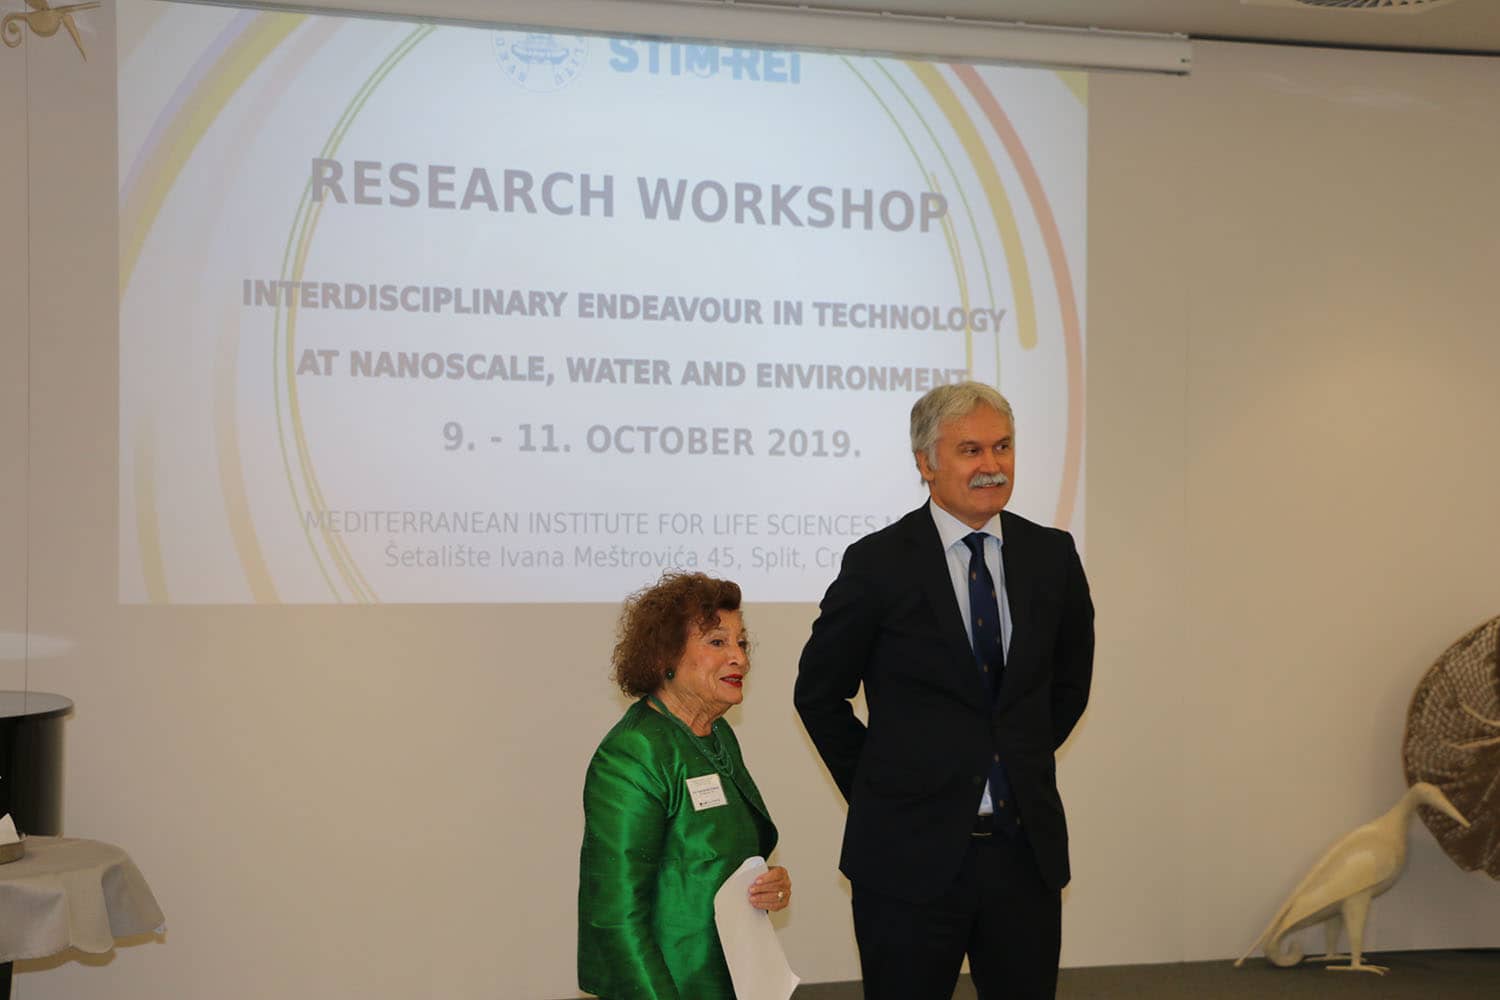 Započela istraživačka radionica “Interdisciplinarni poduhvati u području nanotehnologije, vode i okoliša” u okviru projekta STIM-REI